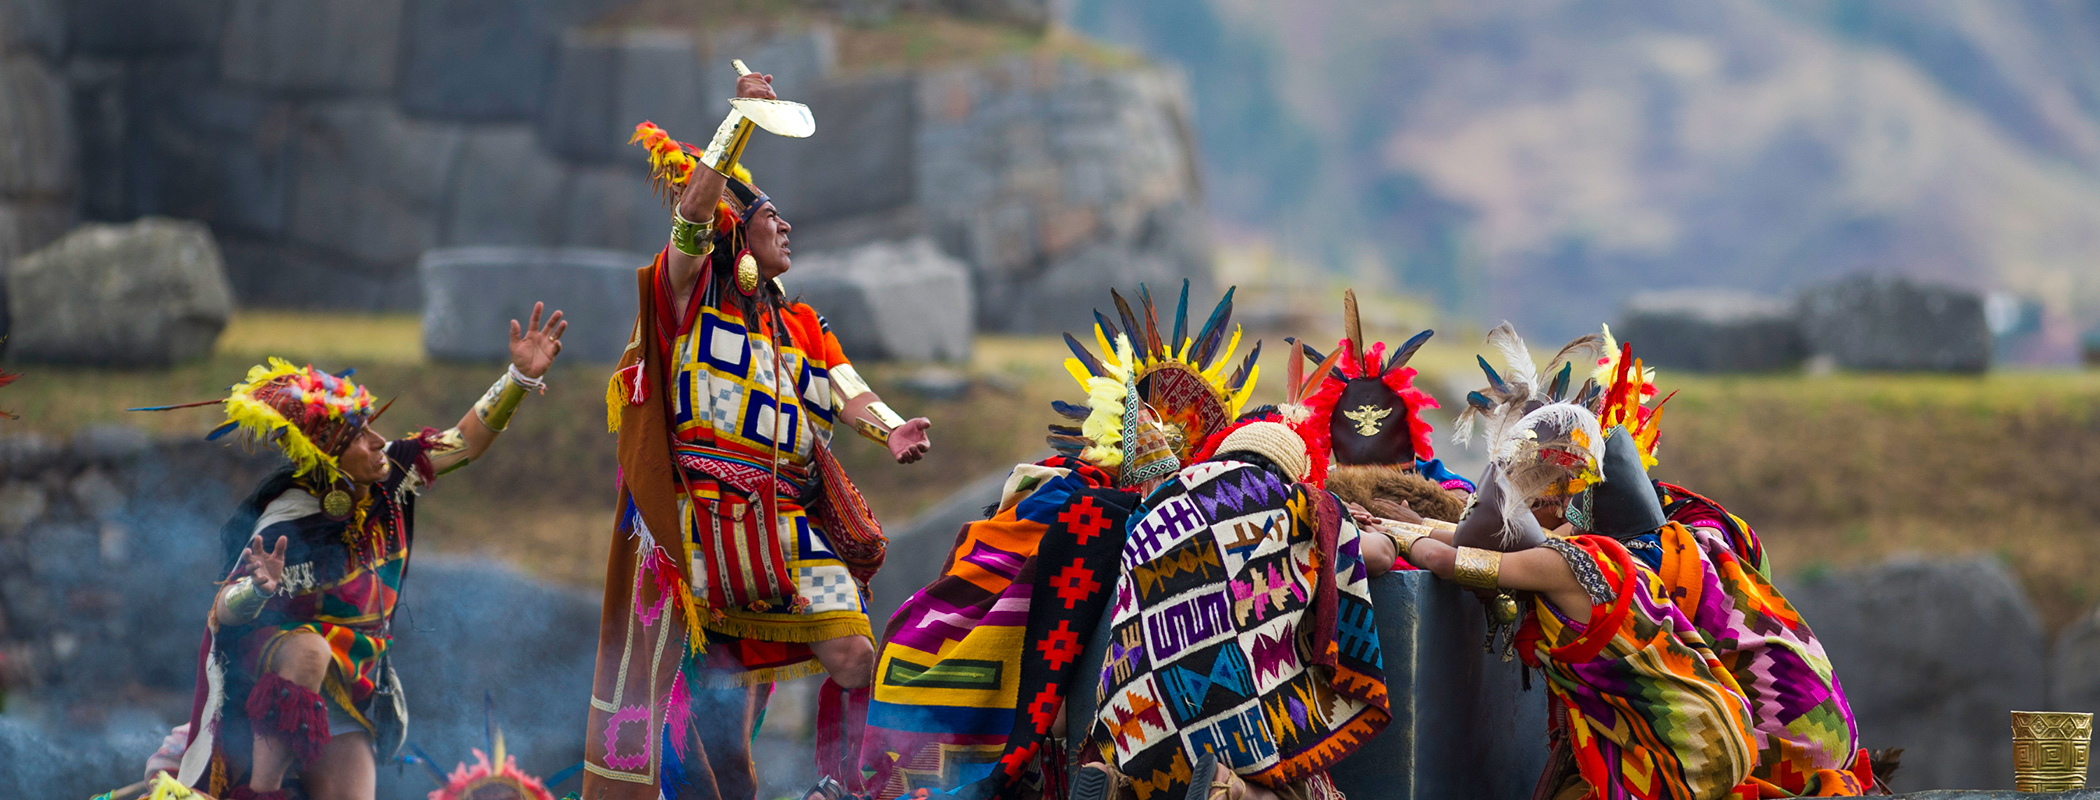 inti-raymi-festival-sun-inca-empire-cusco